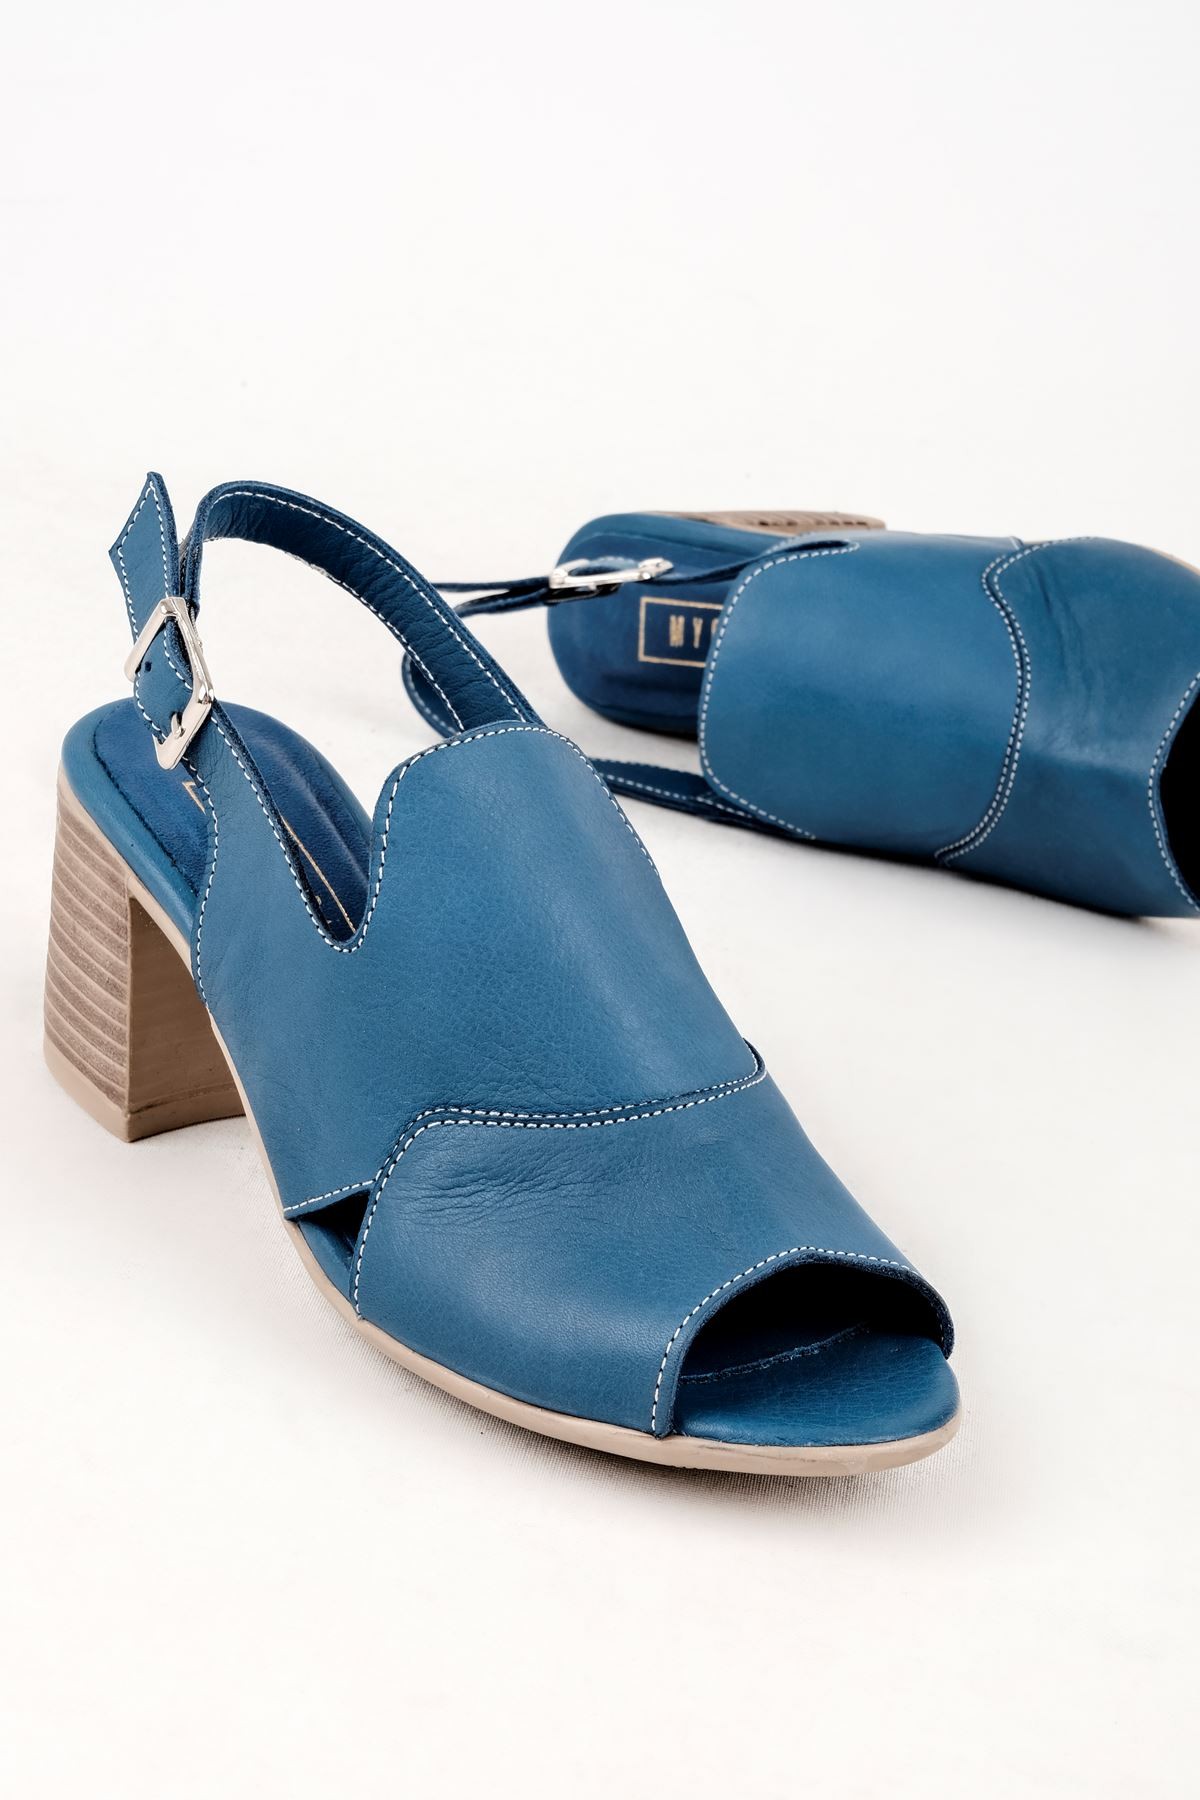 Andry Kadın Hakiki Deri Arkası Açık Topuklu Sandalet-B3129 - Mavi